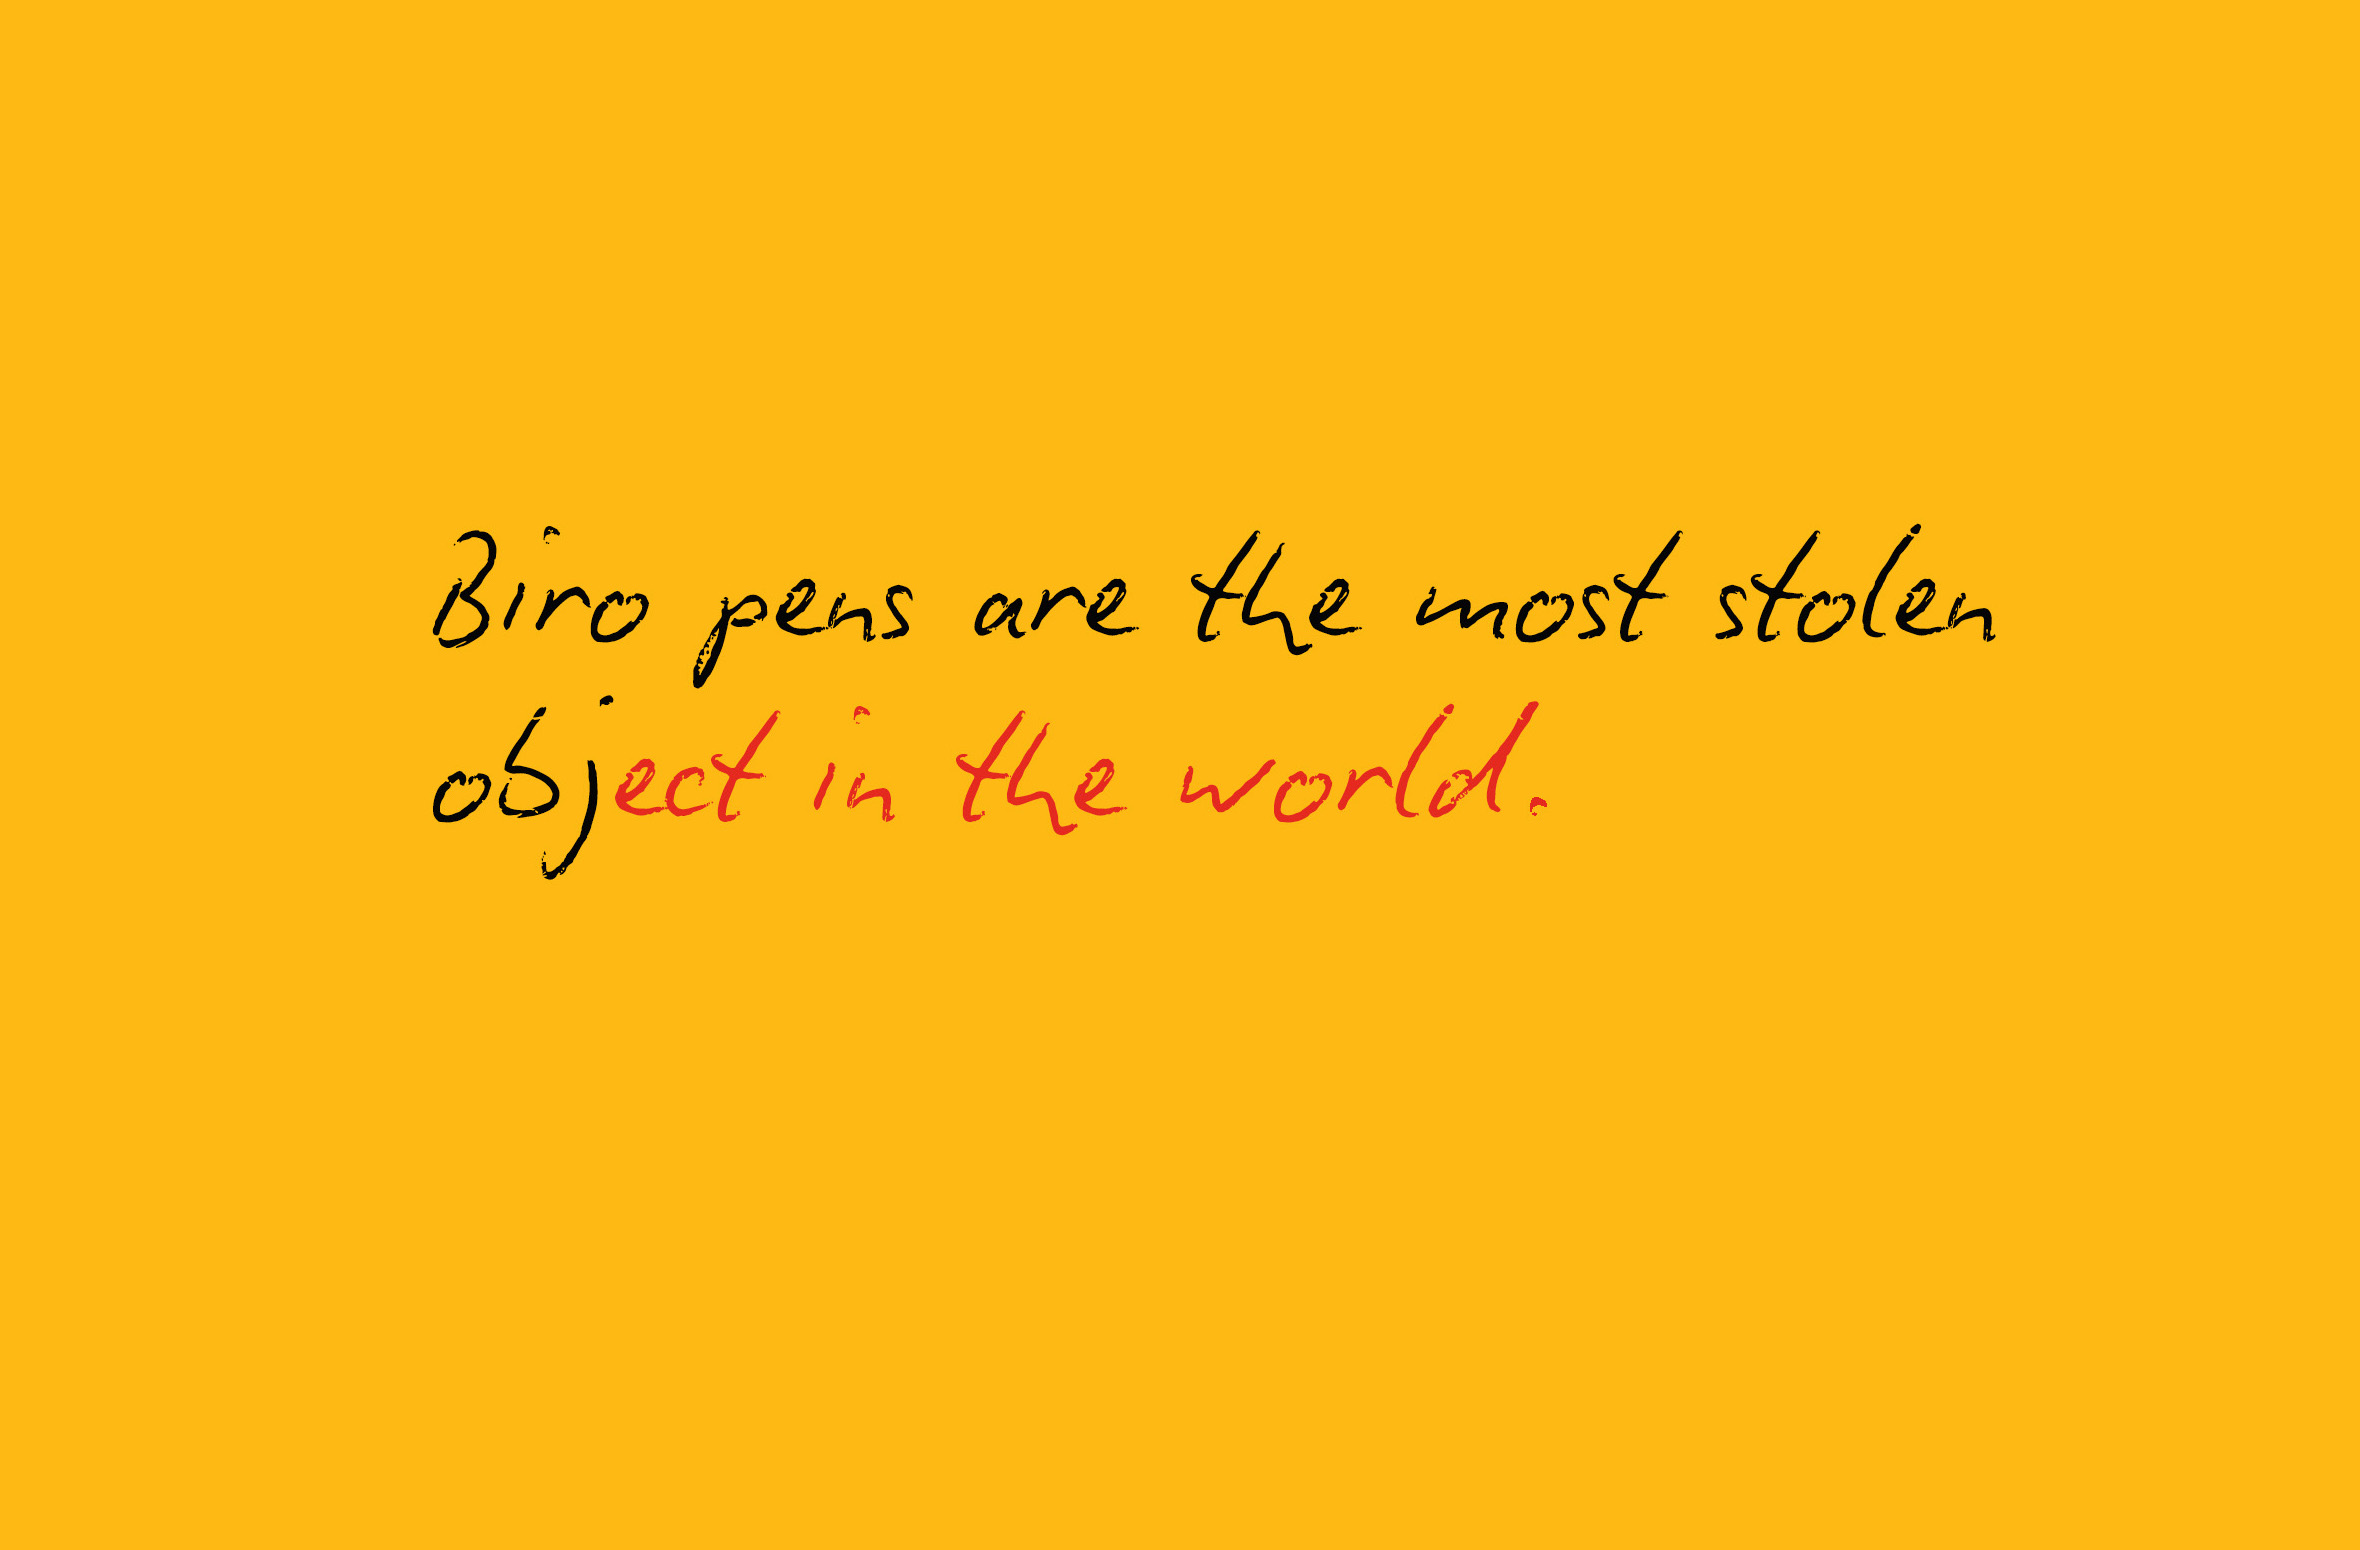 Este anuncio promocional, asegura que los Bic bolígrafos son los más robados en todo el mundo, aunque no ofrece un porcentaje, te muestra otra señal...